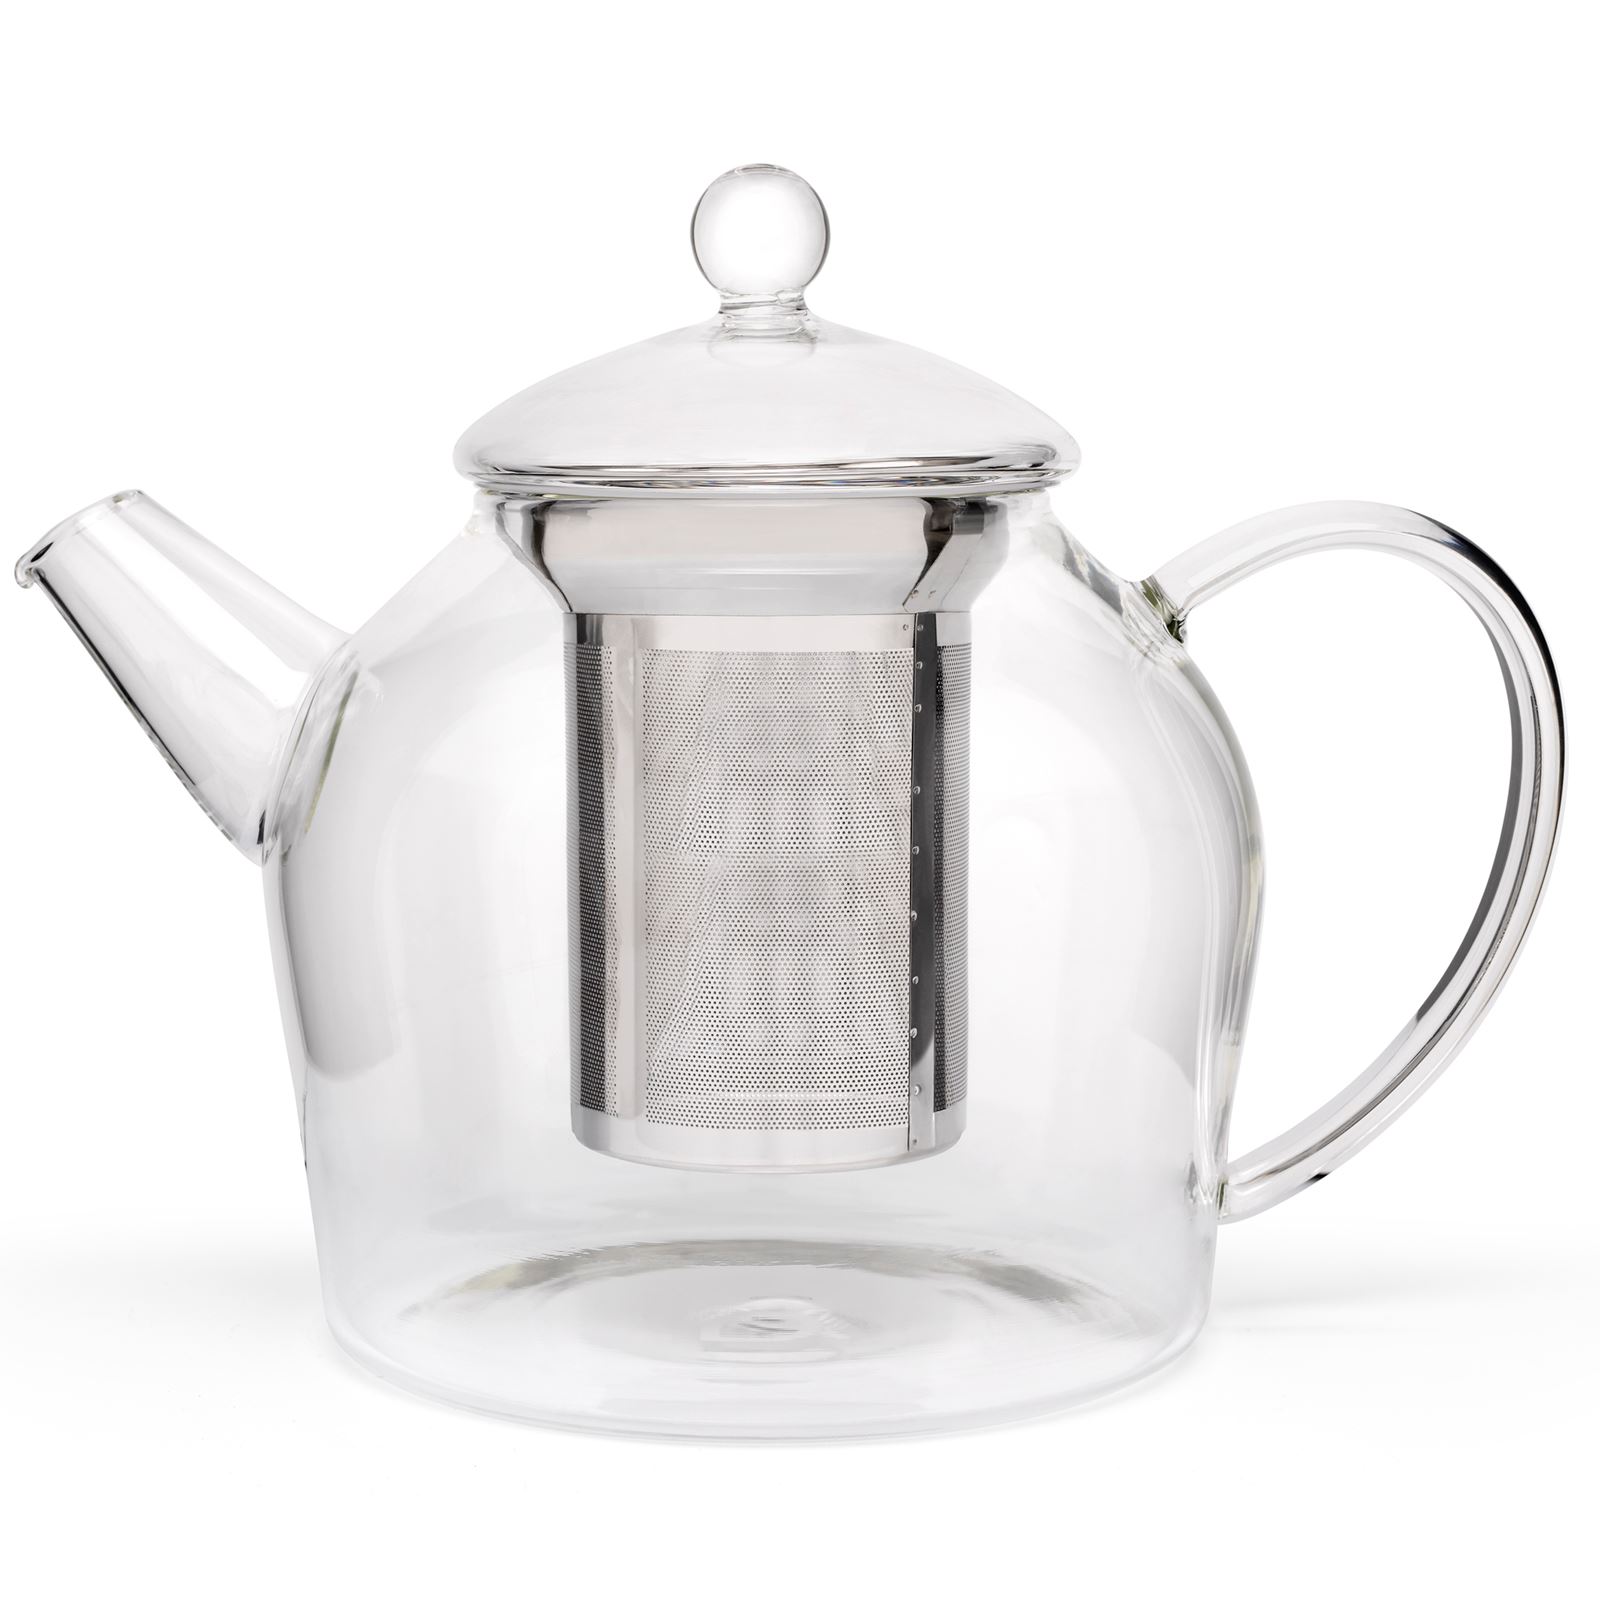 große Liter Teekanne Bredemeijer 1.2 | MM-ComSale Glas aus Edelstahl-Siebeinsatz mit